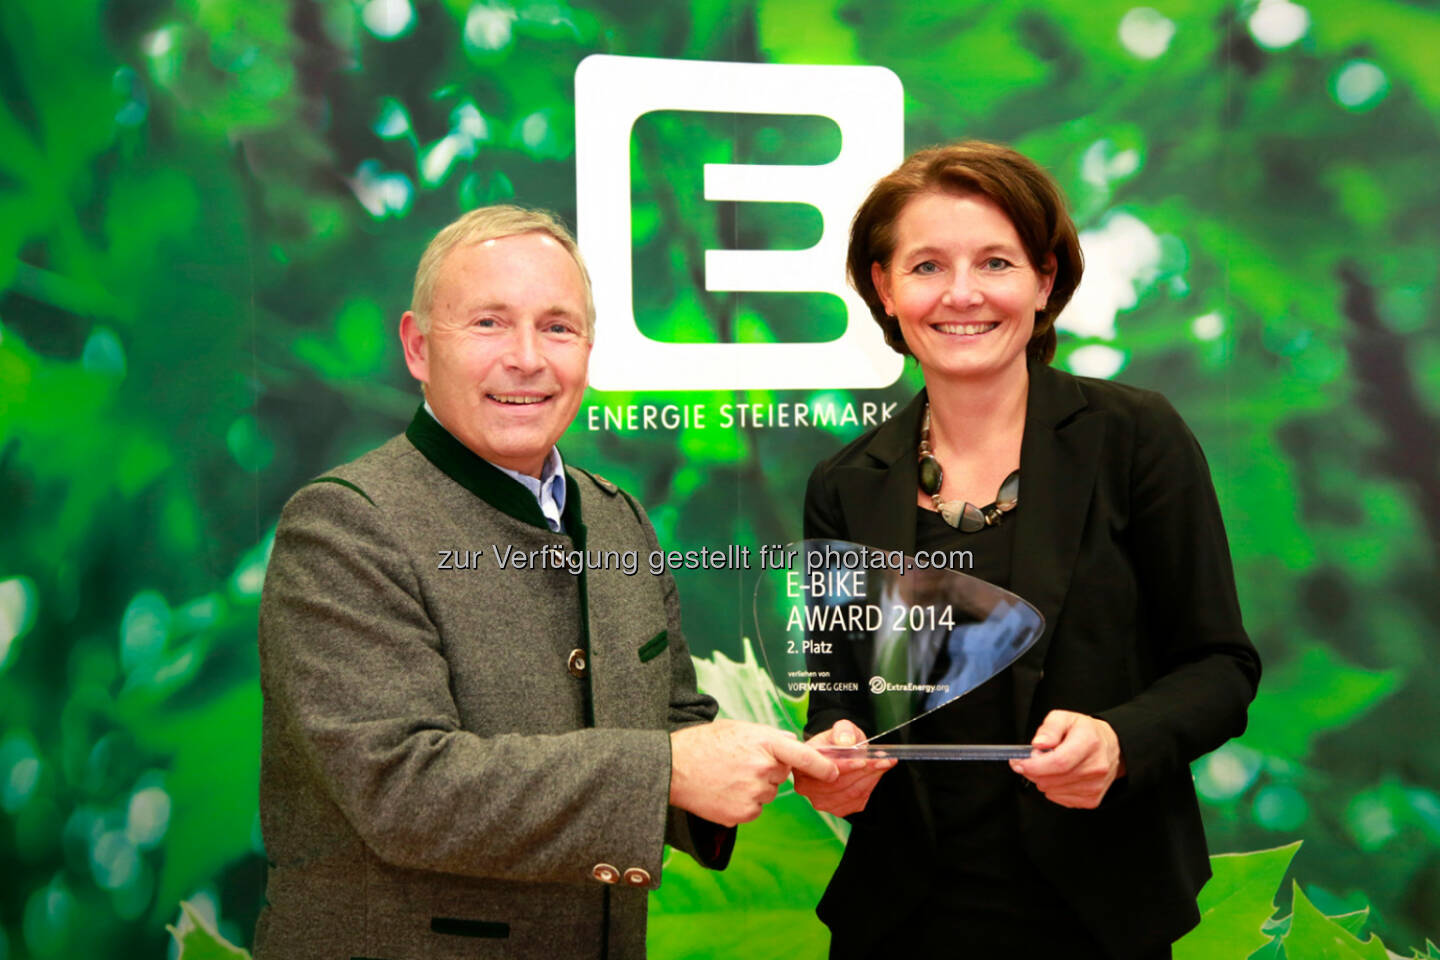 Vorstandssprecher Christian Purrer und GF Gundel Perschler: Energie Steiermark AG: E-Bike Award 2014 in Köln: Internationale Auszeichnung für Energie Steiermark. 2. Platz für Projekt Mit dem E-Bike zur S-Bahn